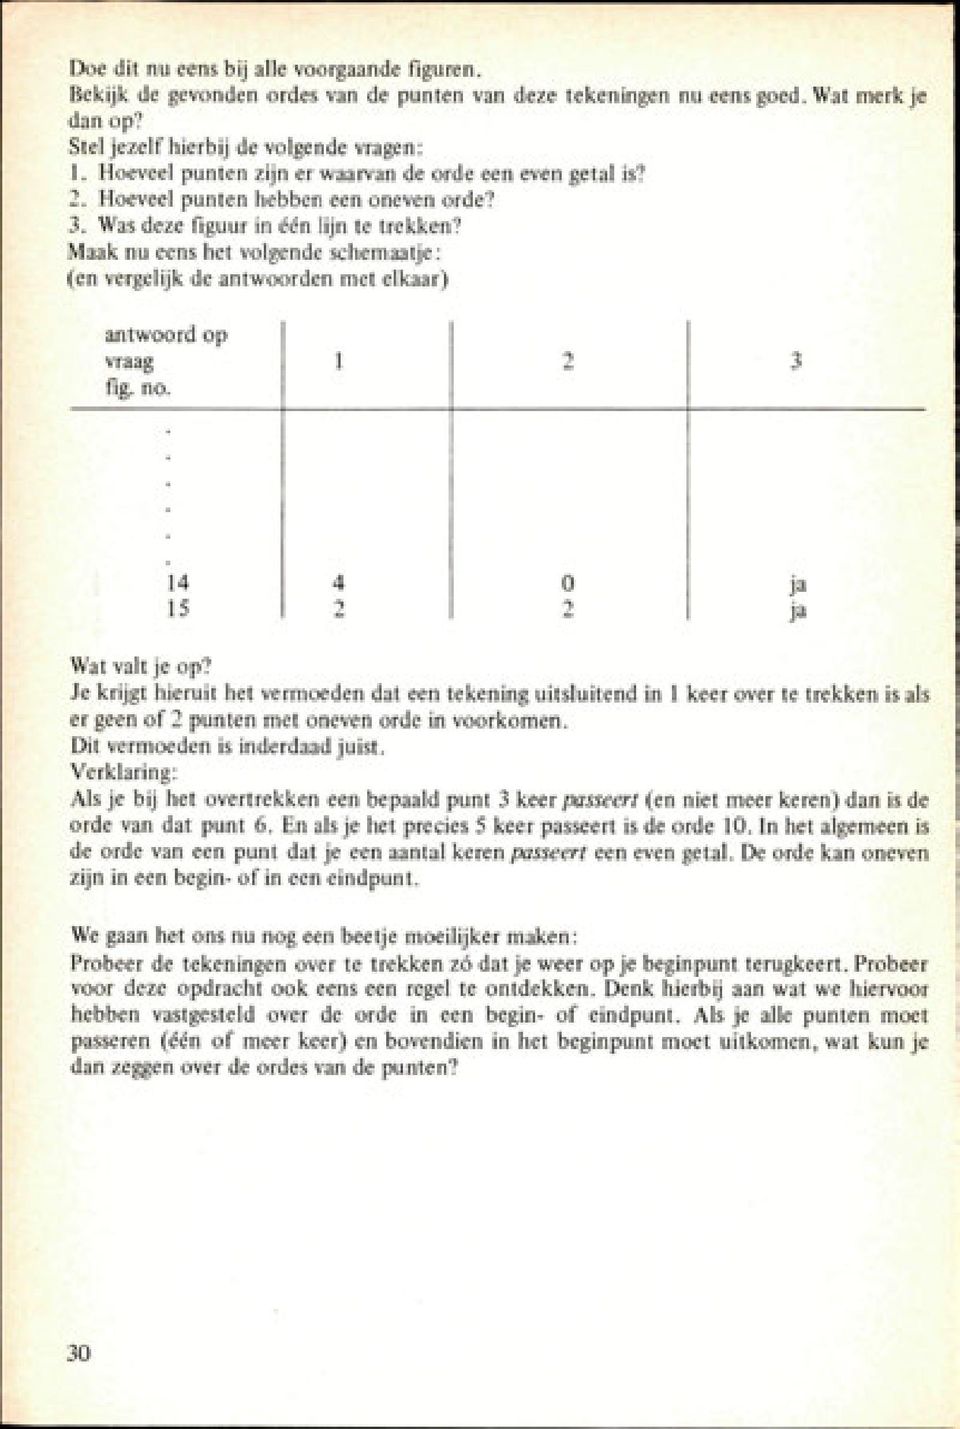 Maak nu eens het volgende schemaatje: (en vergelijk de antwoorden met elkaar) antwoord op vraag fig. no. 1 2 3 14 15 4 2 0 2 ja ja Wat valt je op?